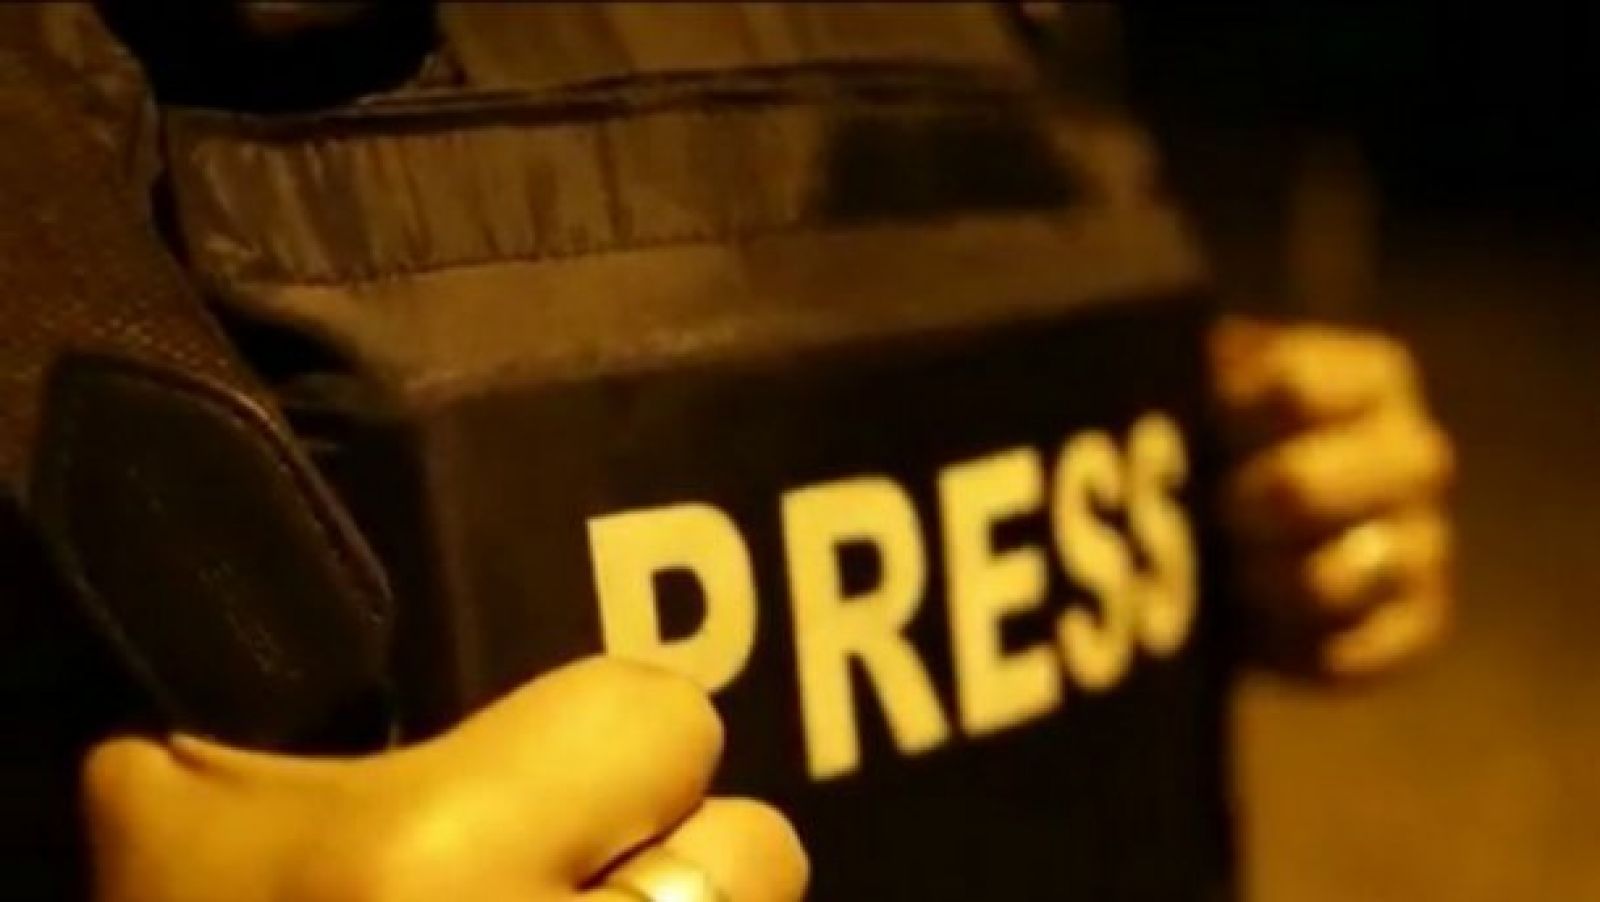 У Білорусі під час протестів знову масово затримують журналістів